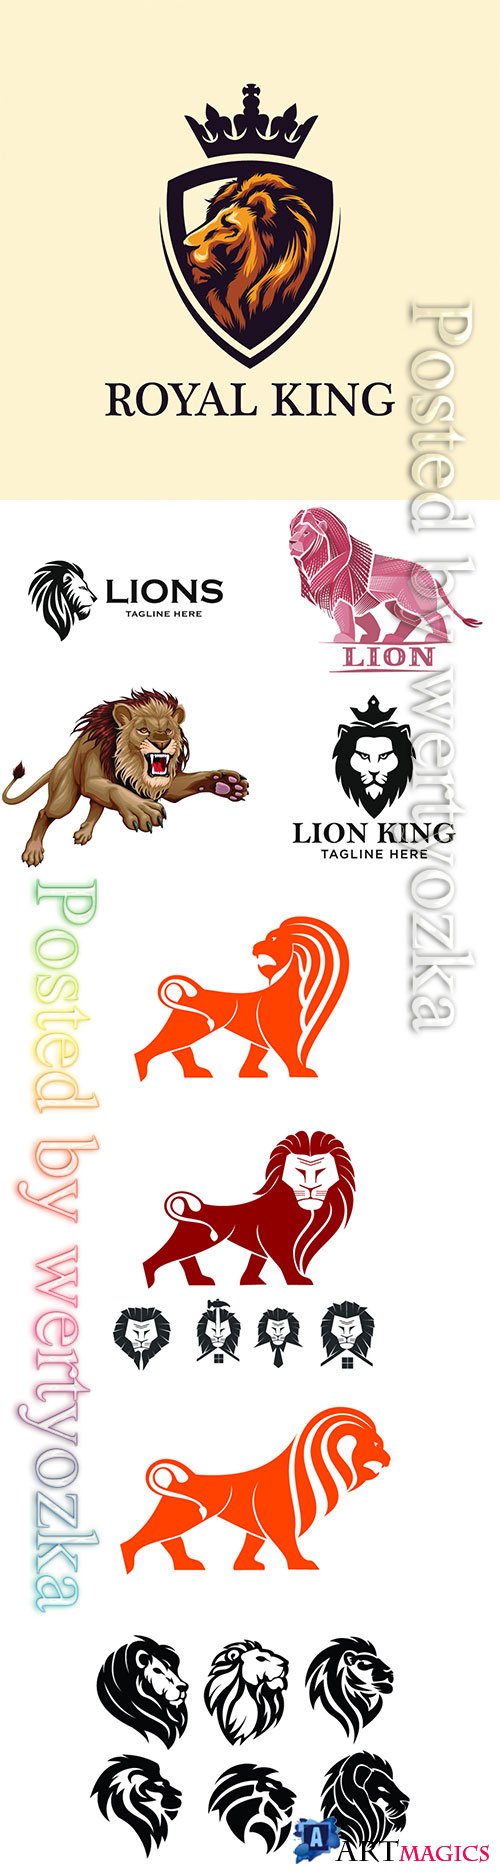 Lion logos vector illustration